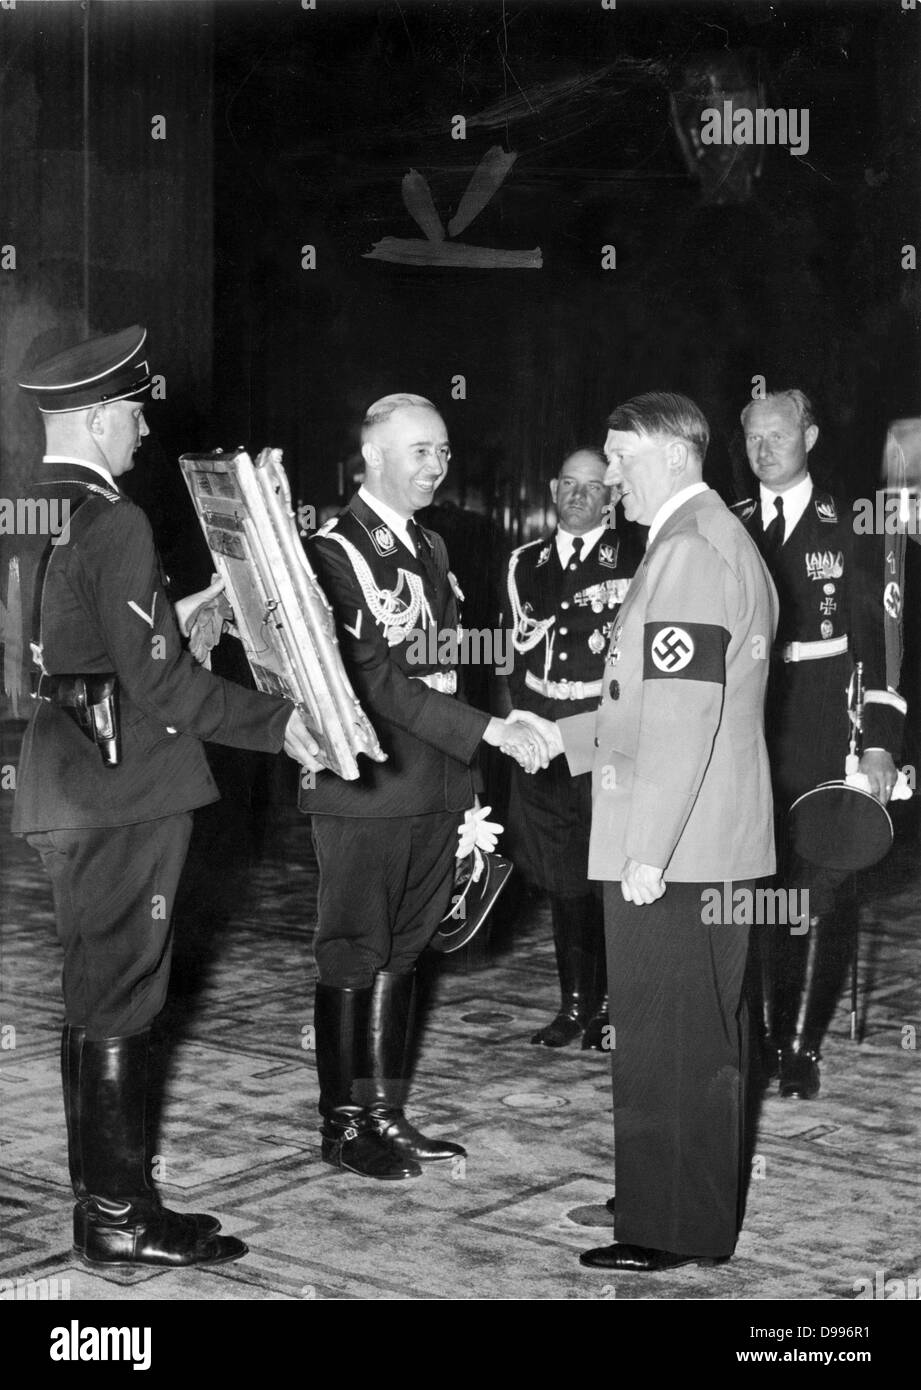 Heinrich Himmler montre Adolf Hitler une peinture confisqués pendant la Seconde Guerre mondiale Banque D'Images